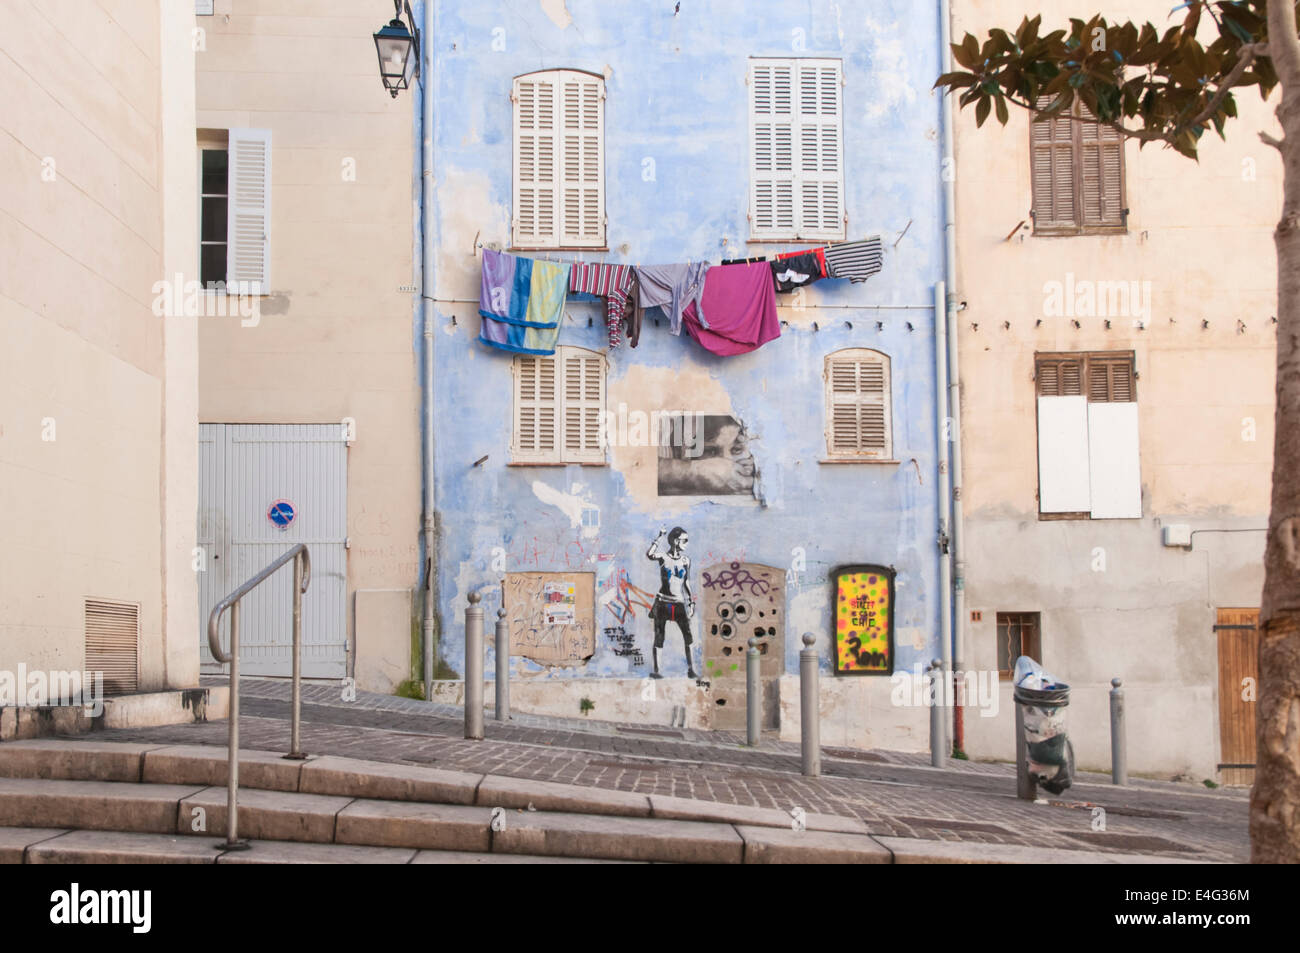 Le panier Architektur Nachbarschaft, Marseille, Frankreich. Stockfoto